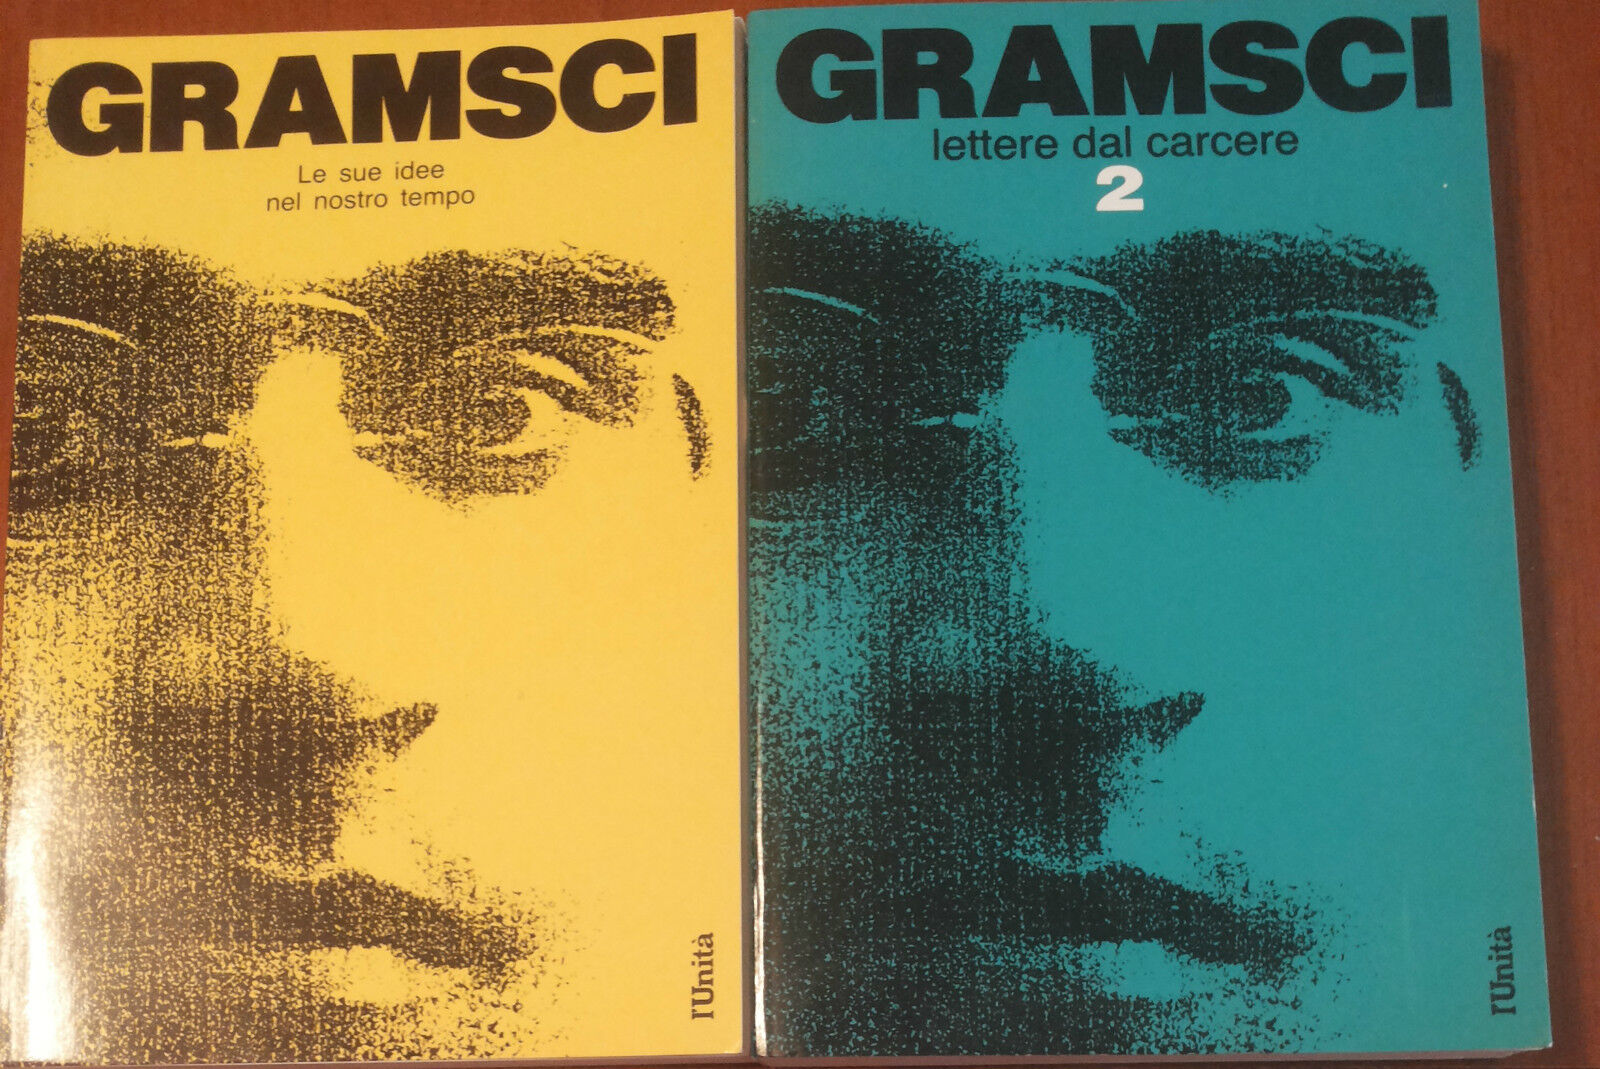 Le sue idee nel nostro tempo; lettere dal carcere - Gramsci - L'unit?,1987 - A